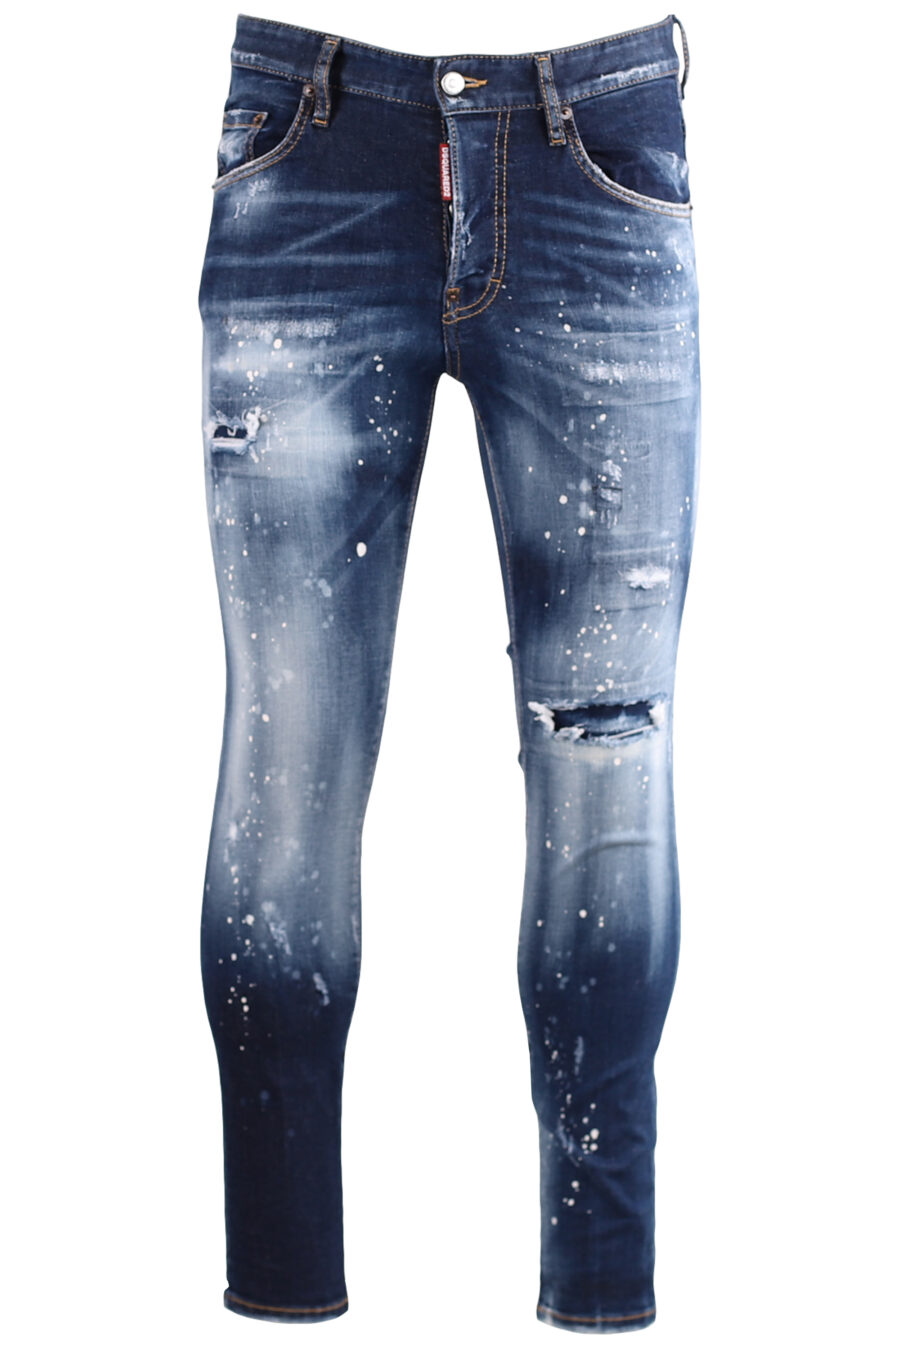 Calças de ganga "Skater" azuis semi-usadas com salpicos brancos - IMG 7259